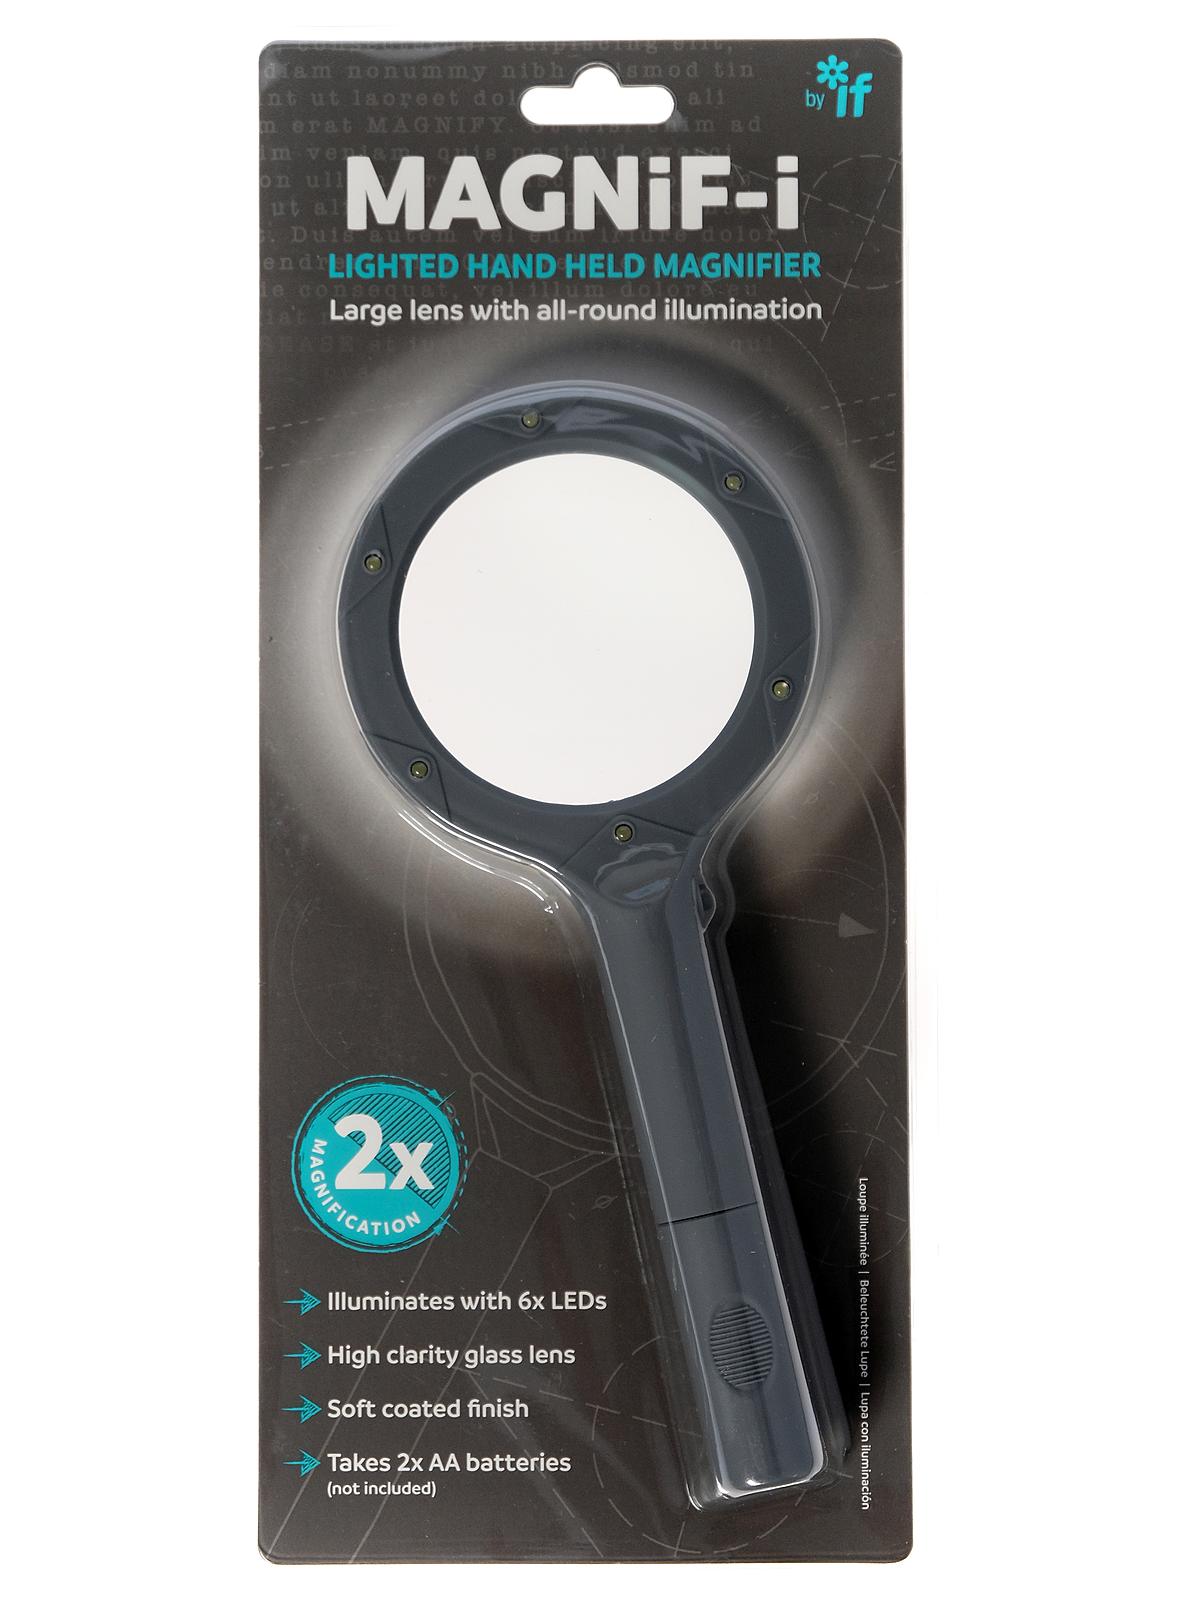 Magnif-I Optical Range Hand Held Lighted Magnifier